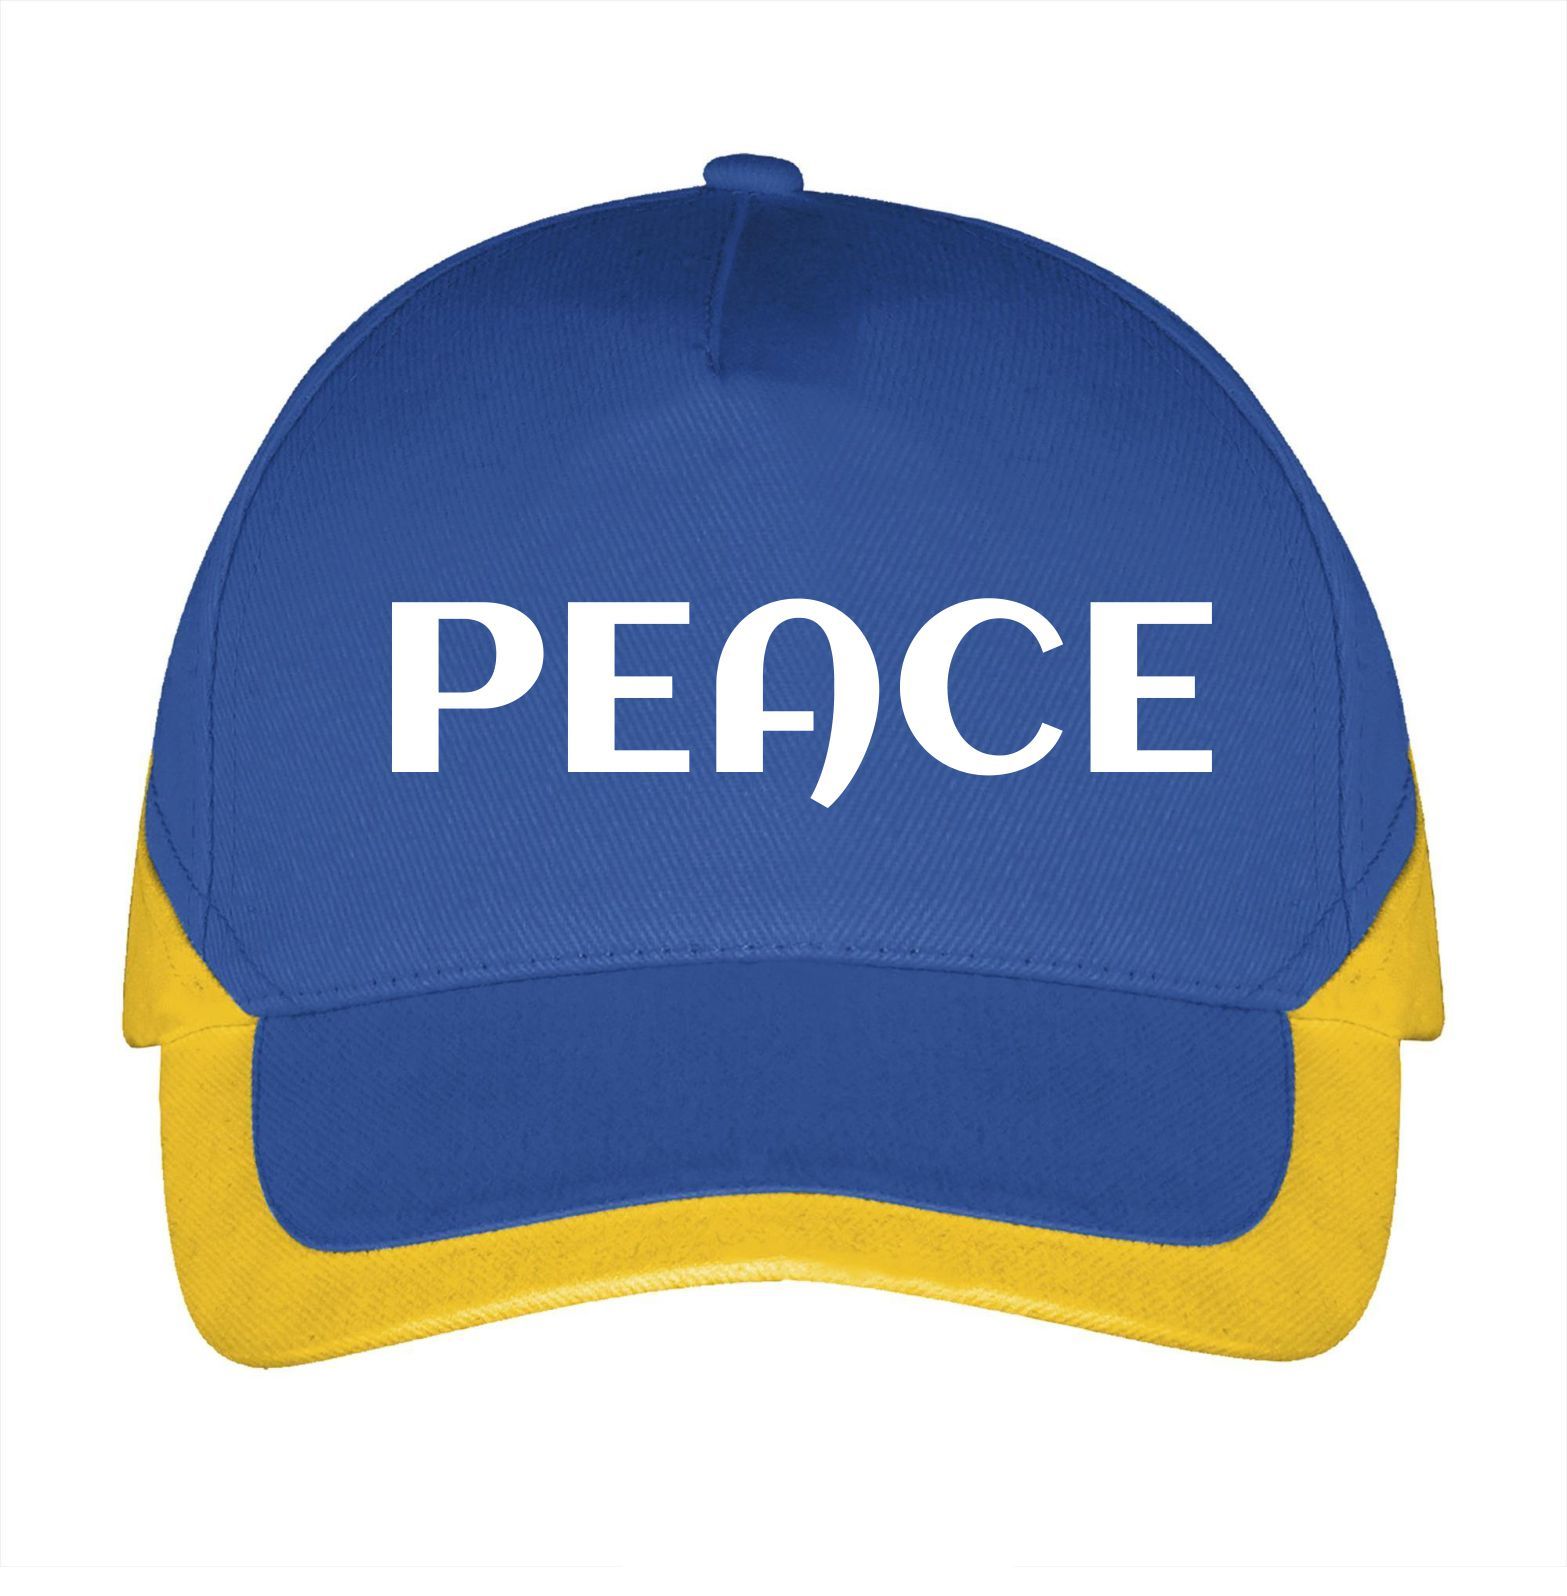 Pet peace vredes pet Oekraïne